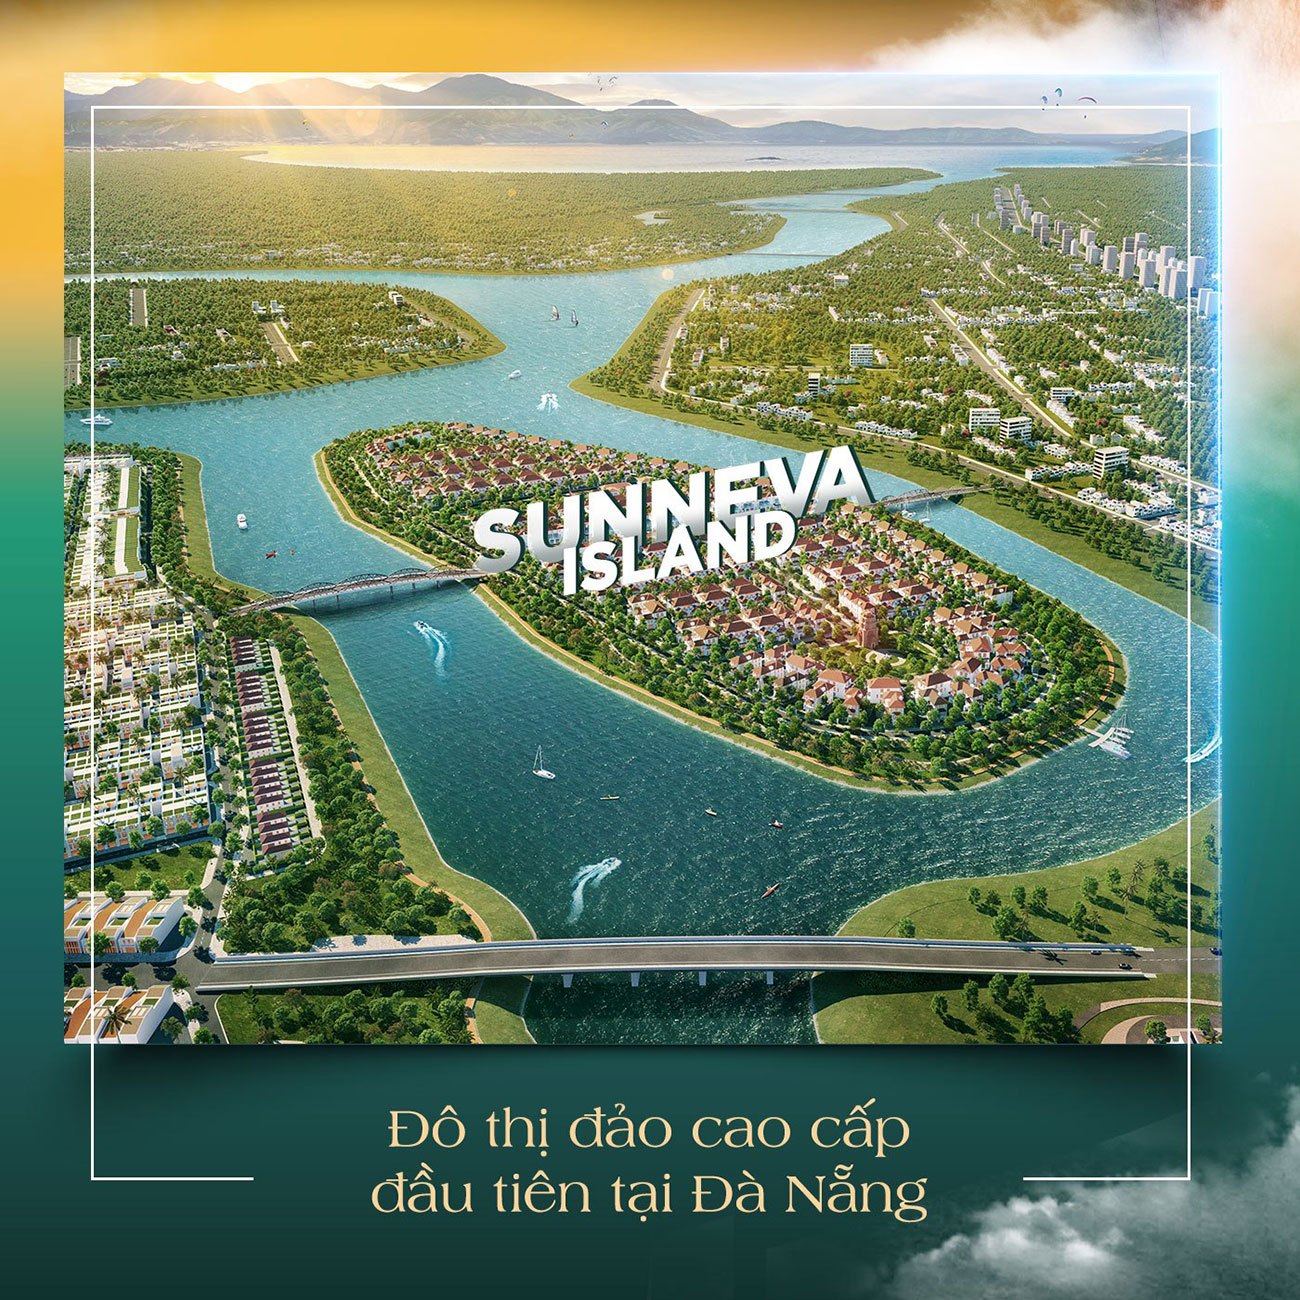 Sunneva Island đô thị đảo cap cấp đầu tiên tại Đà Nẵng